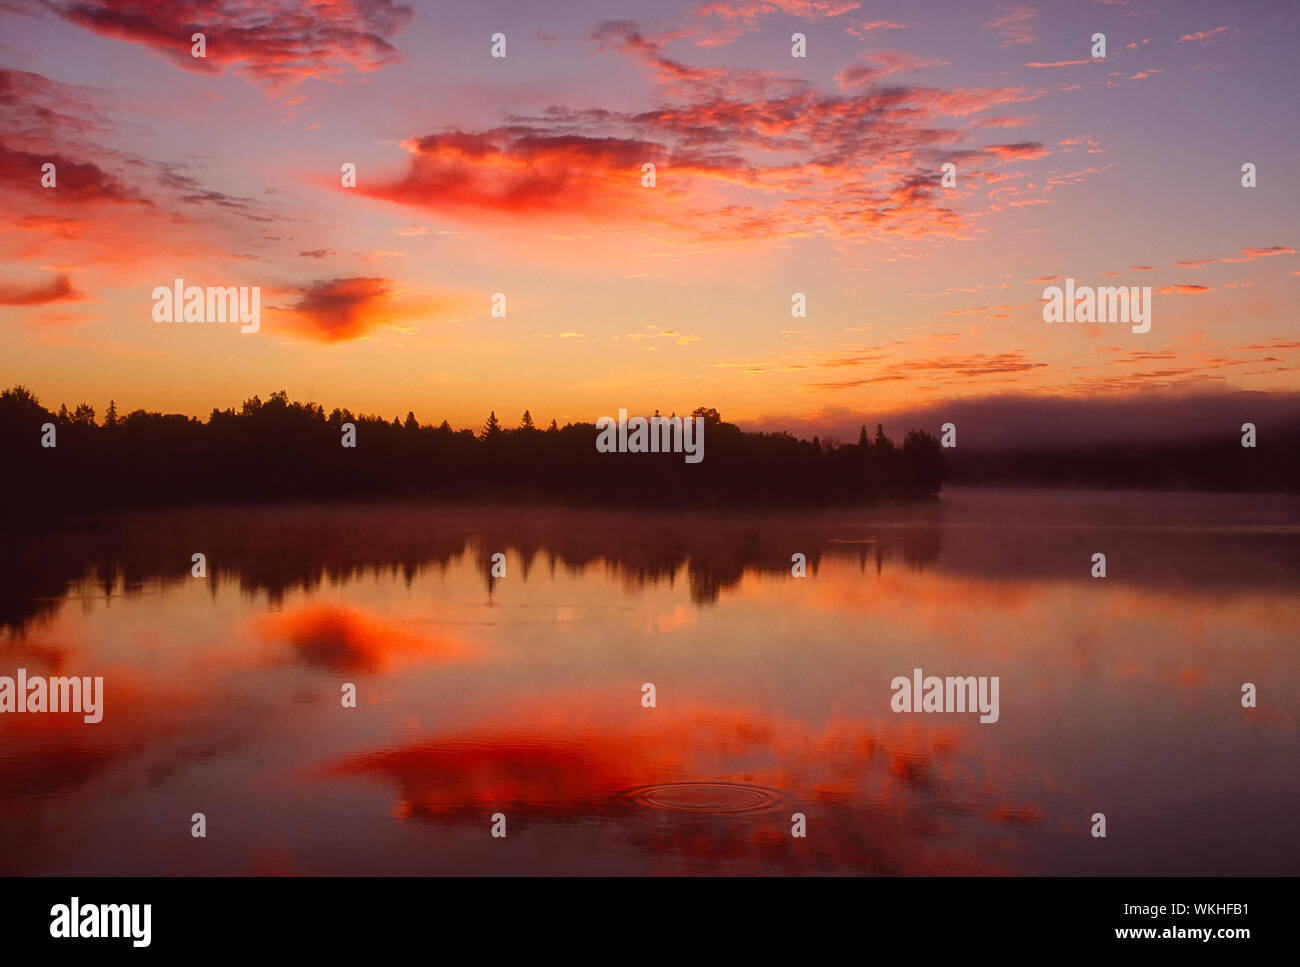 Sunrise, Simon Lake, Naughton, City of Greater Sudbury, Ontario, Canada Stock Photo